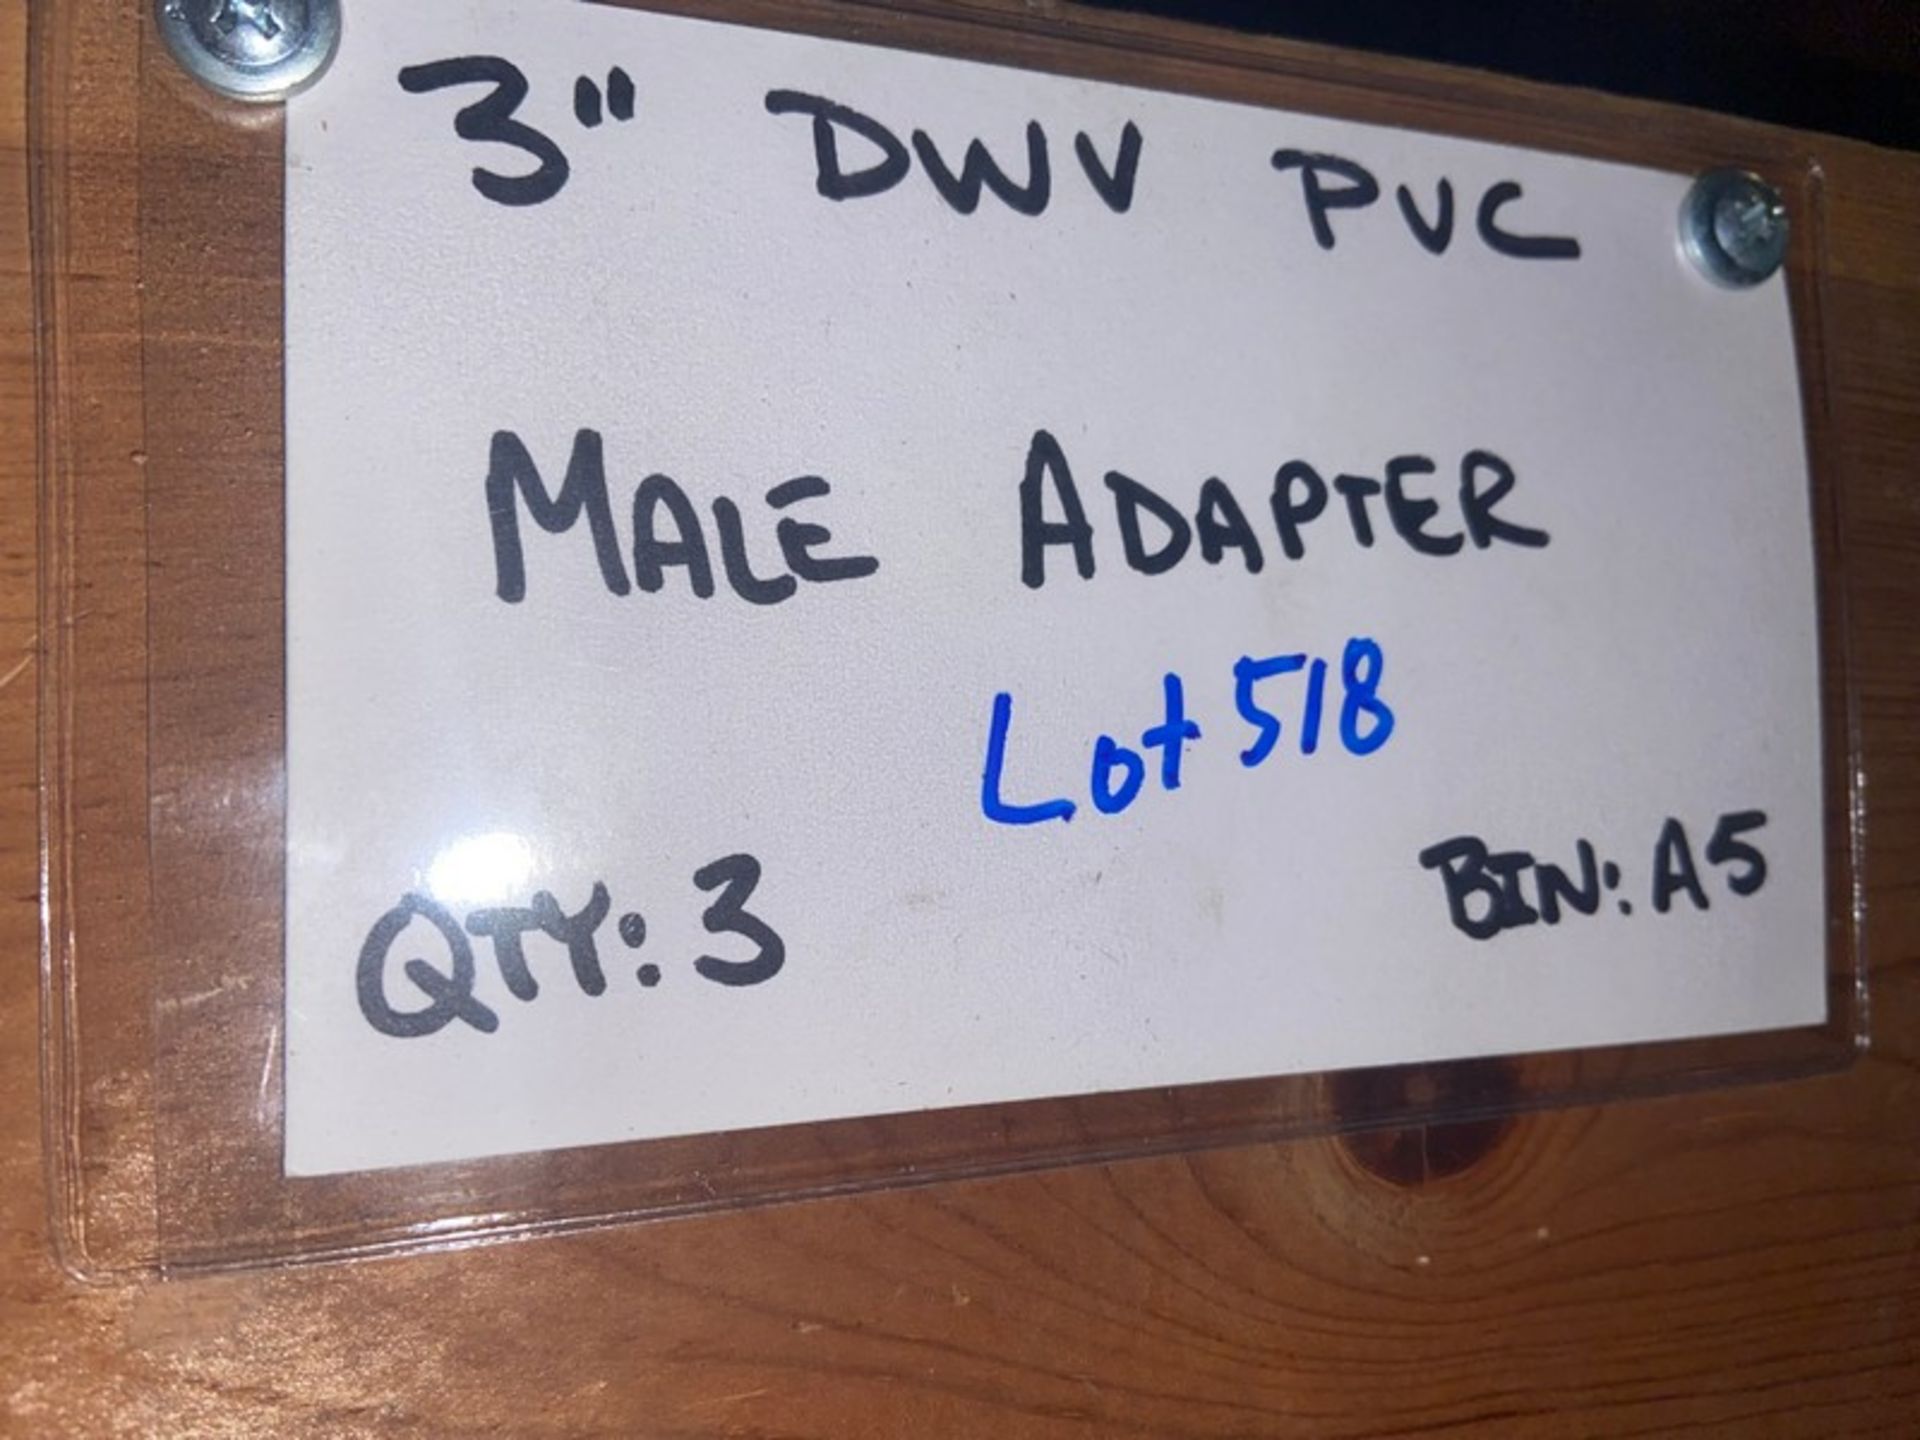 (3) 3” DWV PVC MALE ADAPTER (Bin: A5), Includes (7) 3” DWV PVC Female Adapter (STREET) (Bin:A5), - Image 6 of 11